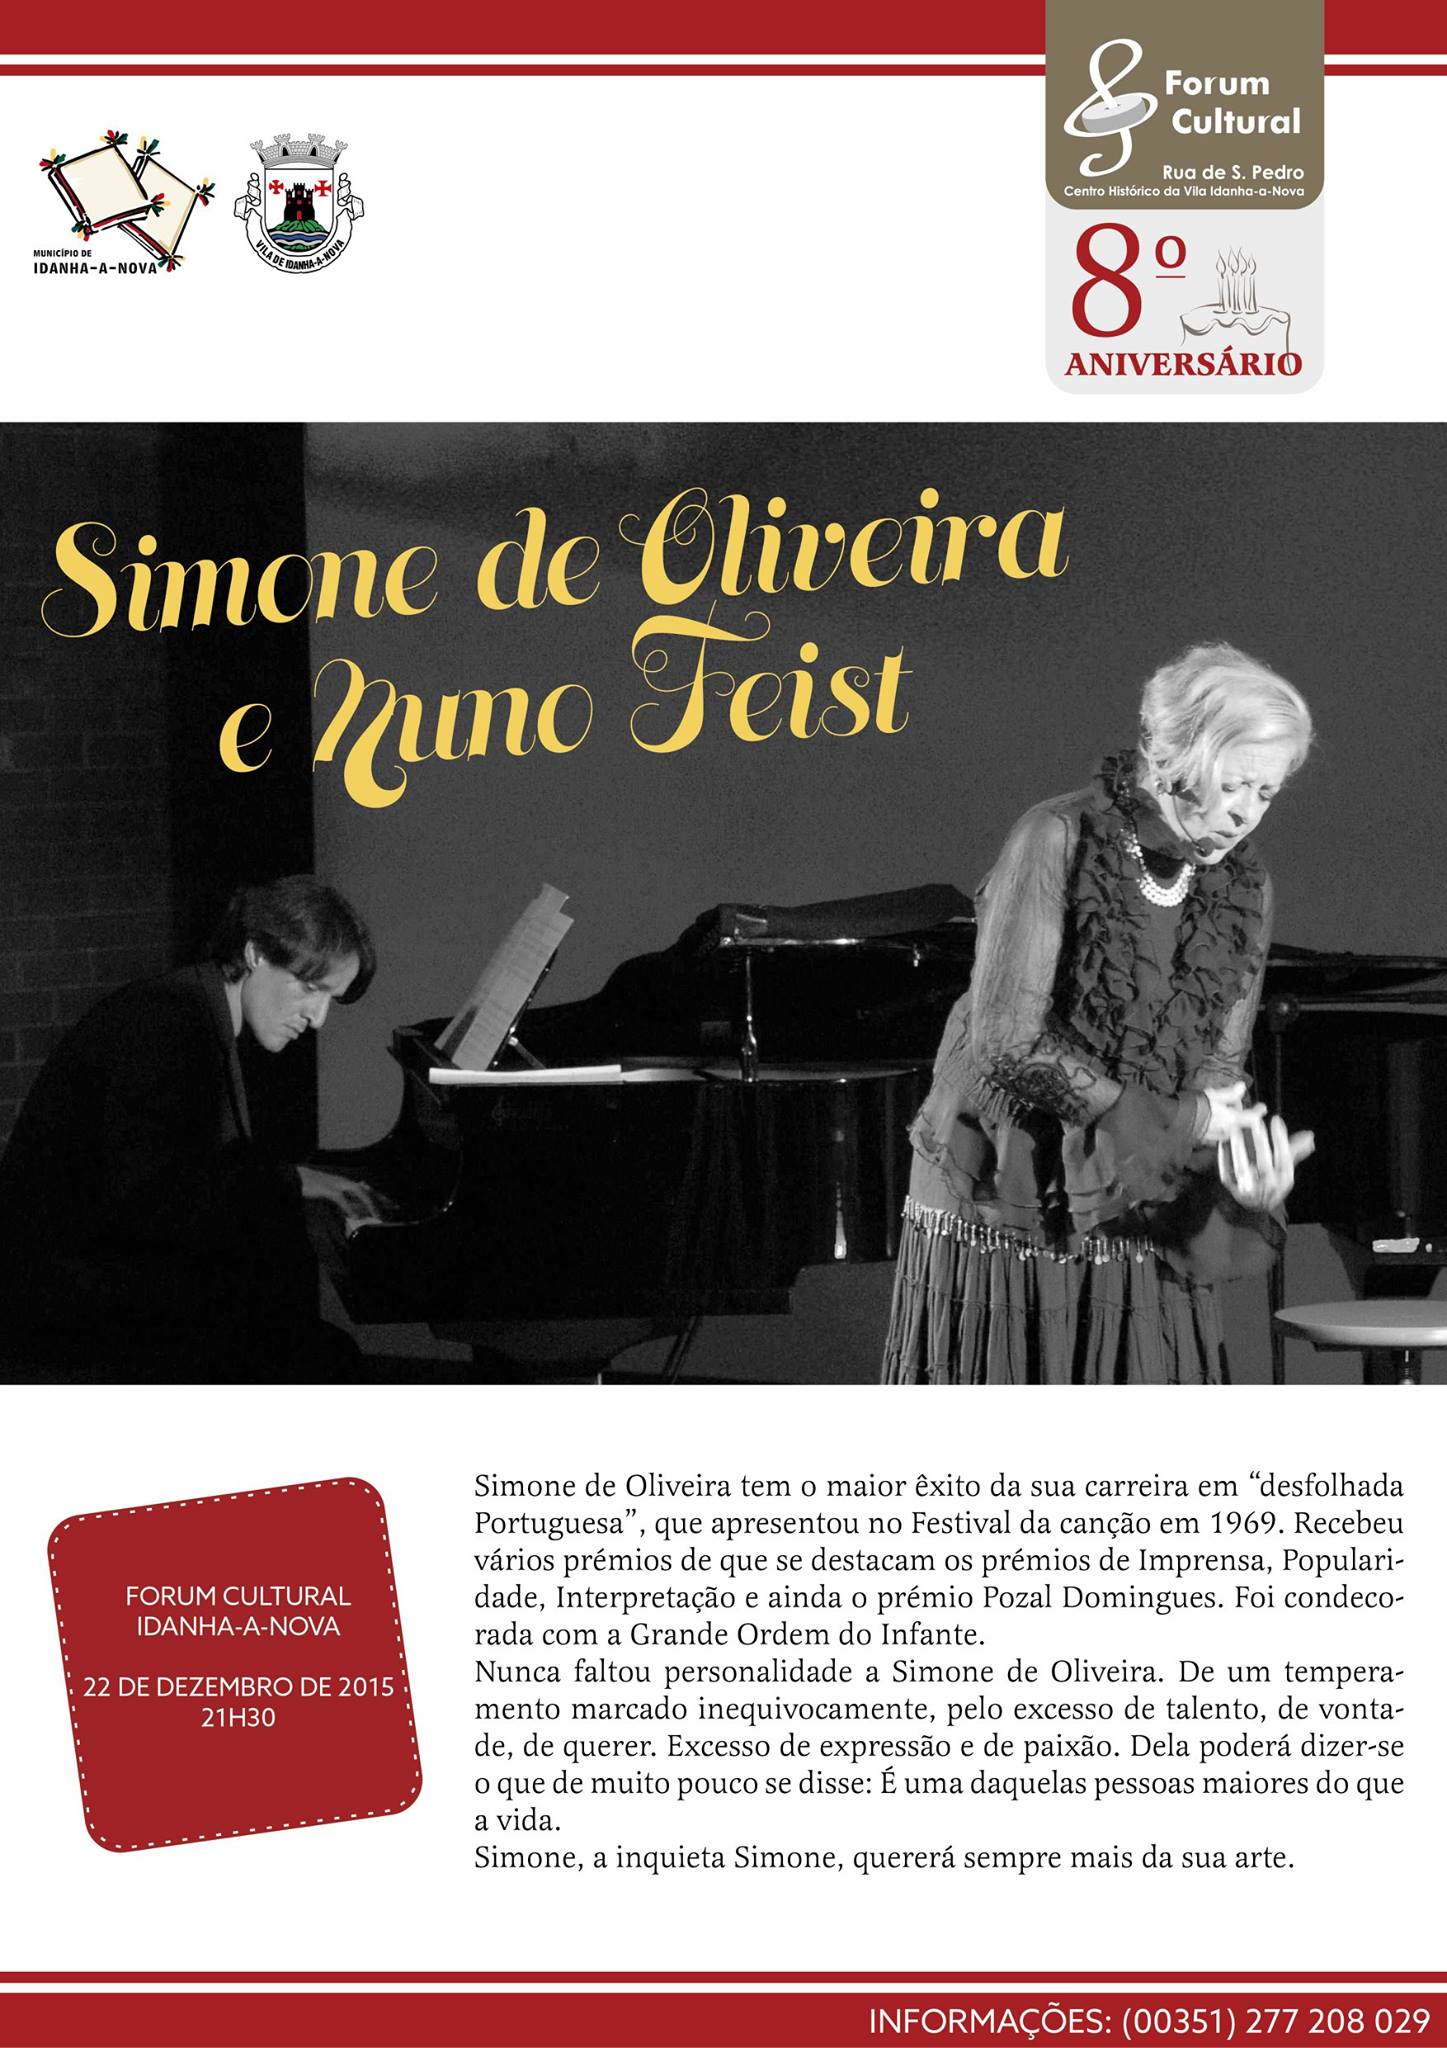 Idanha-a-Nova: Simone de Oliveira e Nuno Feist em concerto